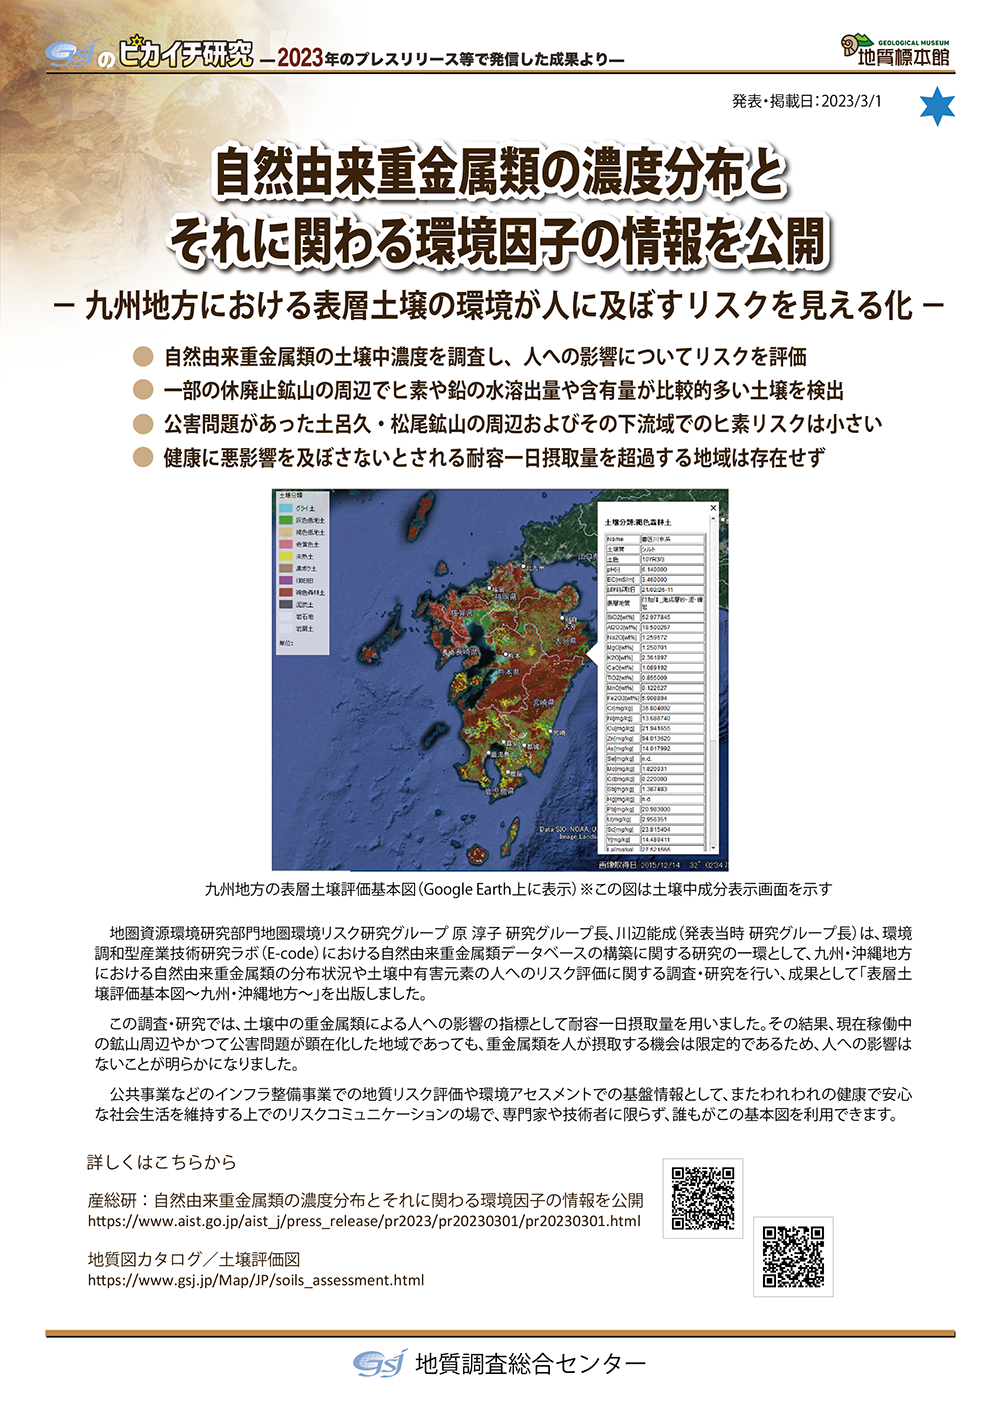 自然由来重金属類の濃度分布とそれに関わる環境因子の情報を公開 ―九州地方における表層土壌の環境が人に及ぼすリスクを見える化―